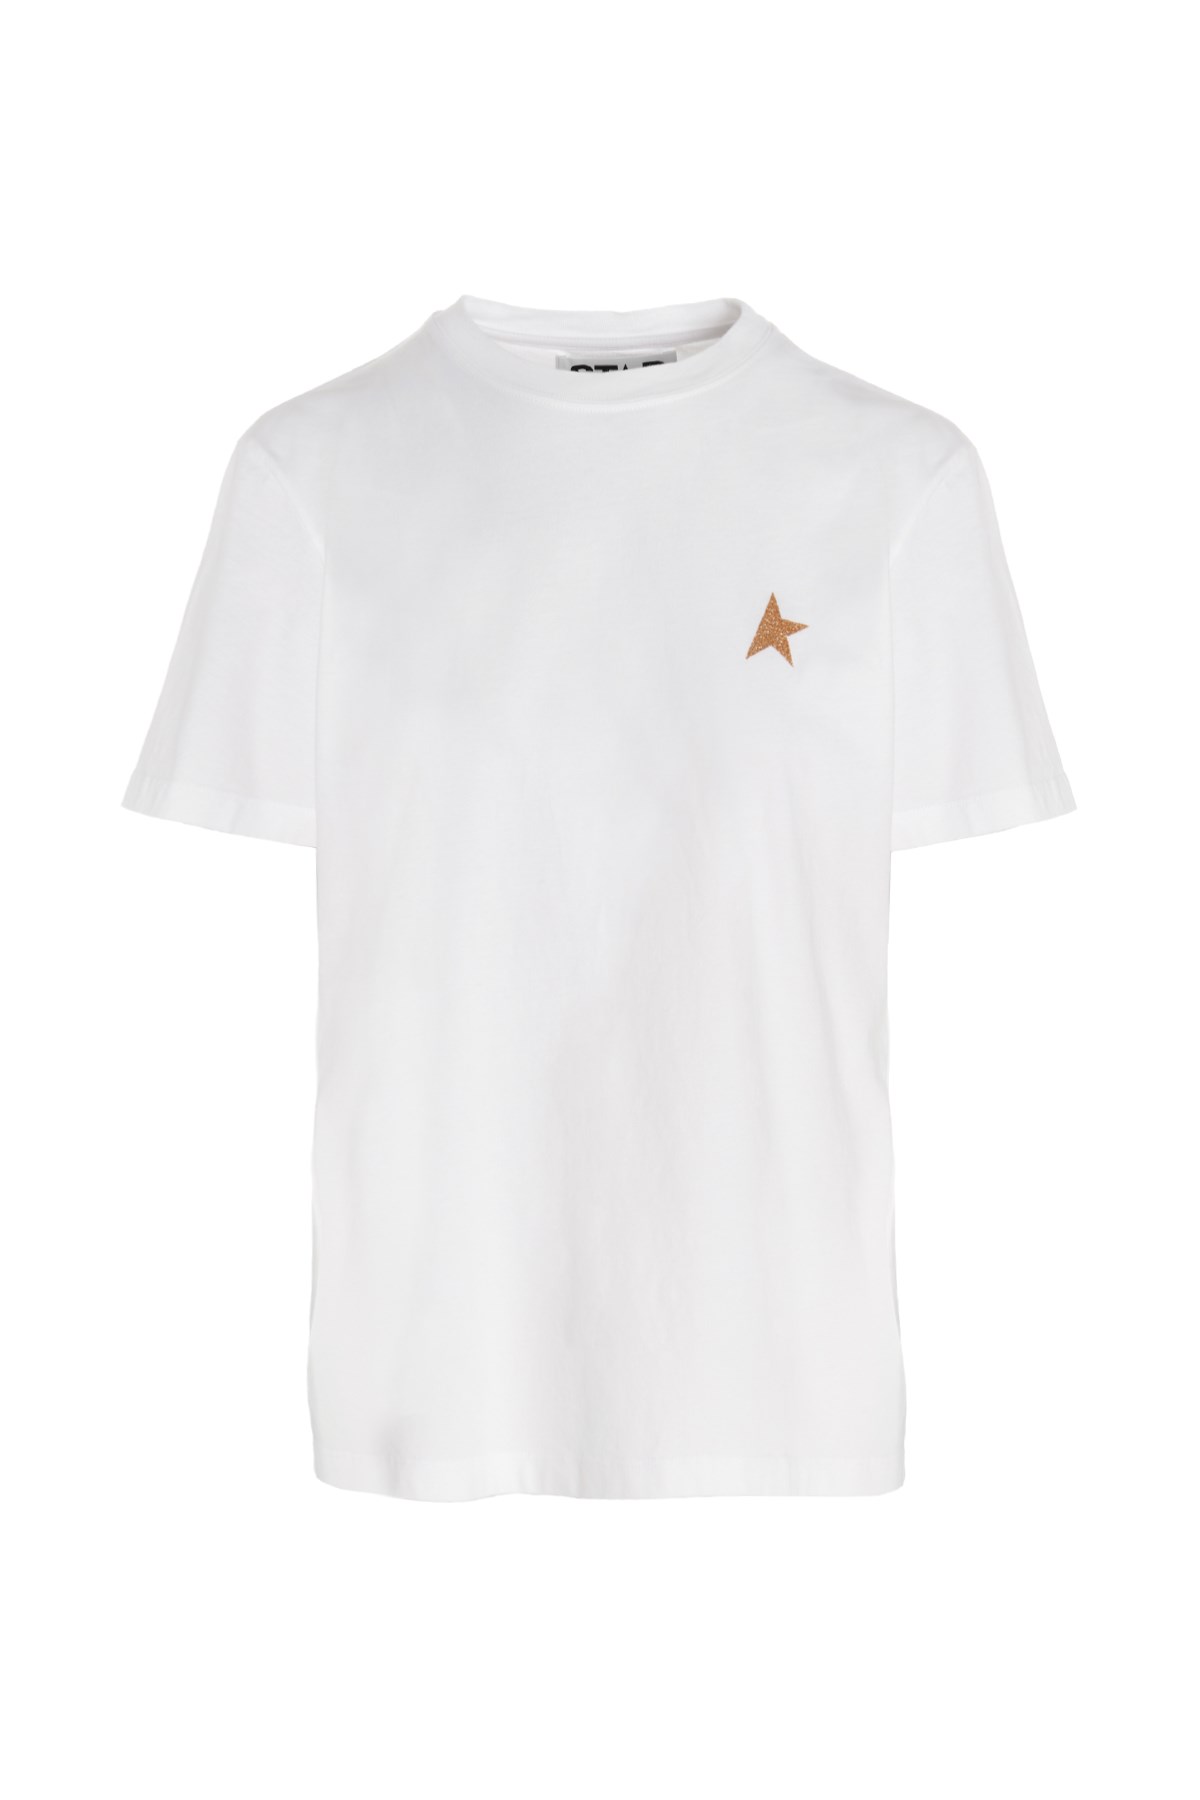 GOLDEN GOOSE 'Small Star' Logo Print Jersey T-Shirt